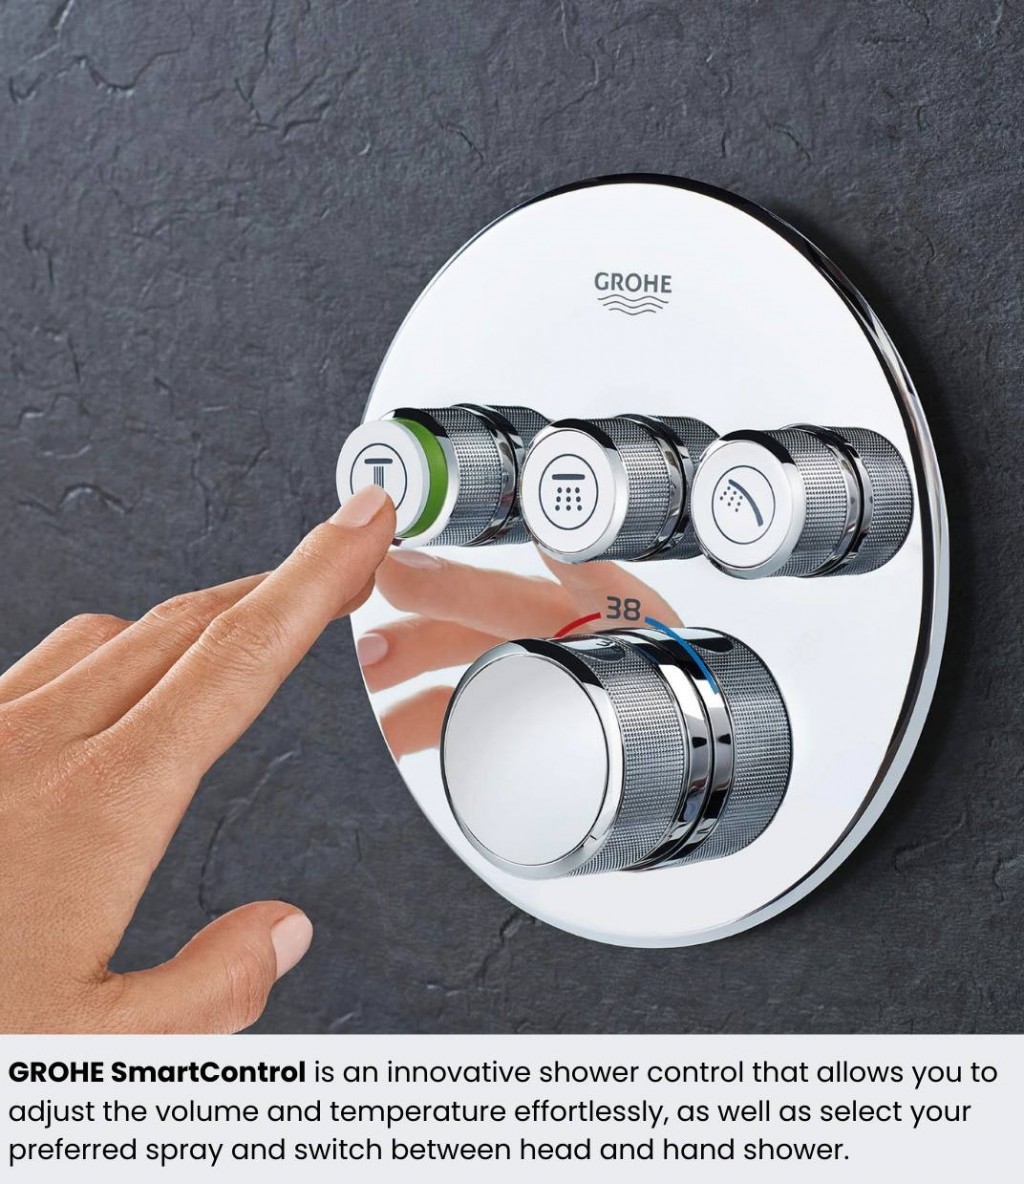 GROHE Smart Control - sử dụng công nghệ tiên tiến cho phép người dùng cá nhân hóa vòi hoa sen theo cách họ thích và điều khiển trực quan nhiệt độ và lượng nước